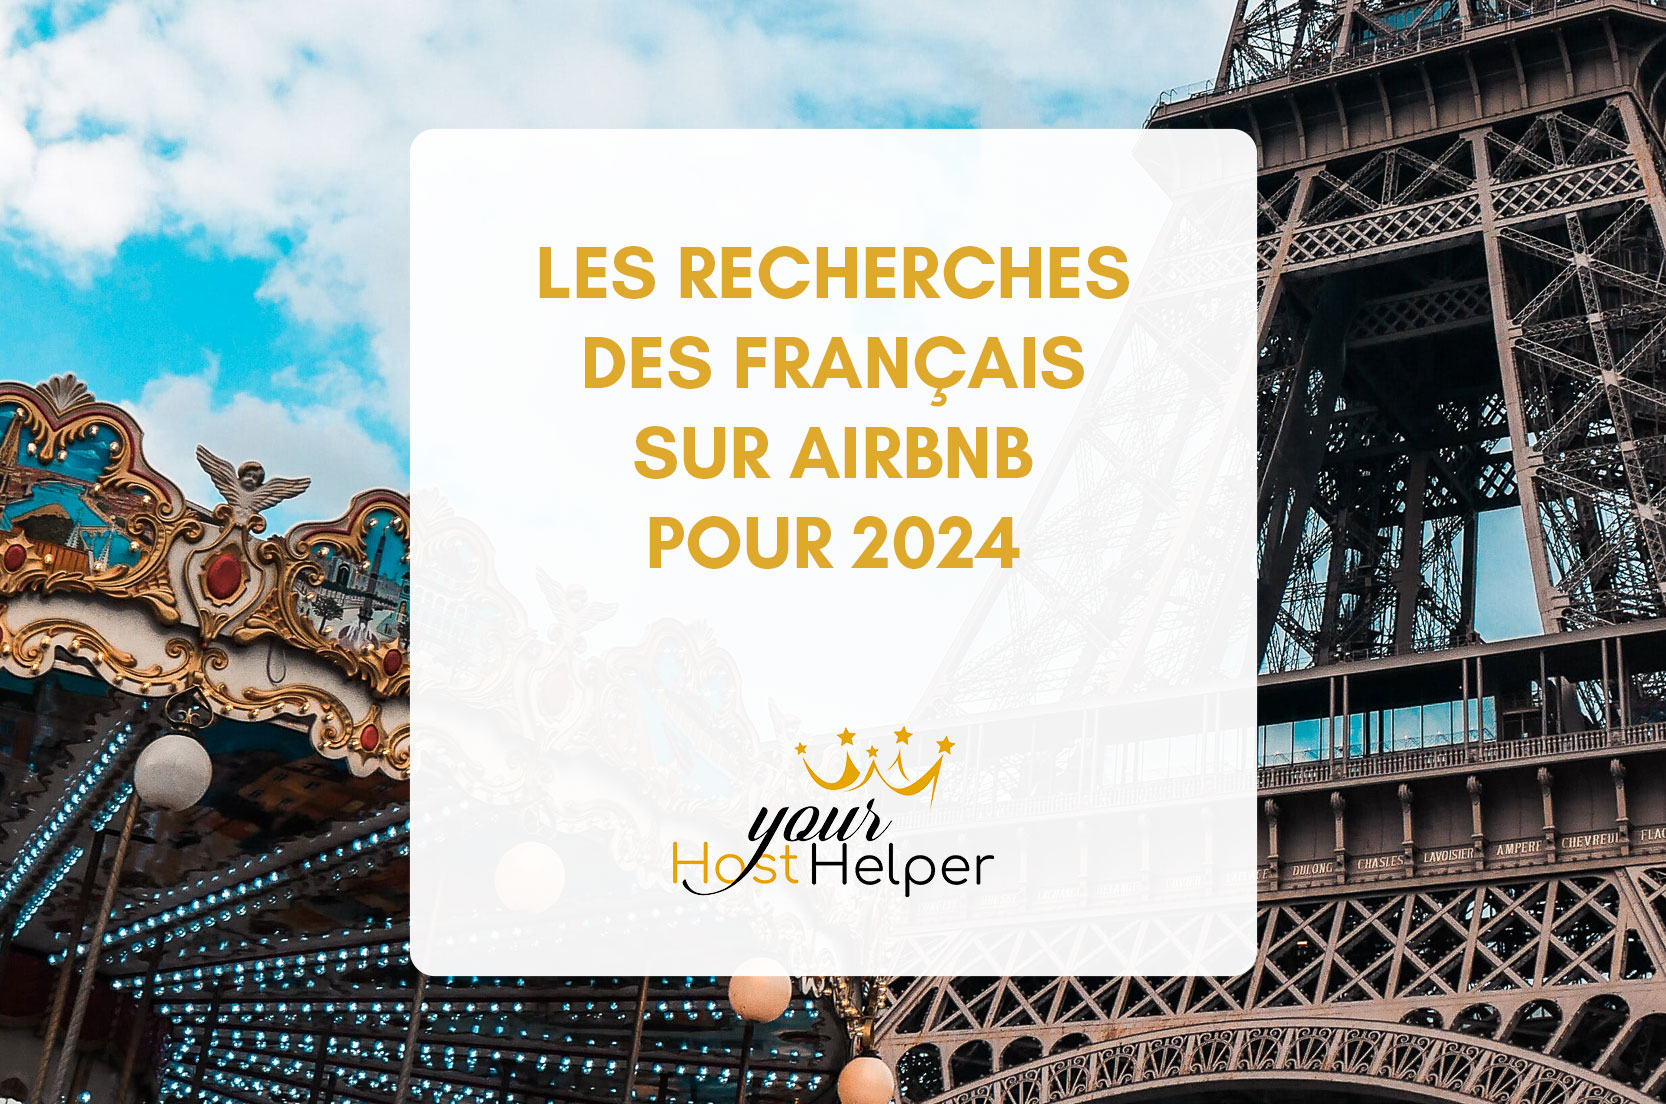 Вы сейчас просматриваете поисковые запросы на французском языке на Airbnb за 2024 год: Франция в центре внимания